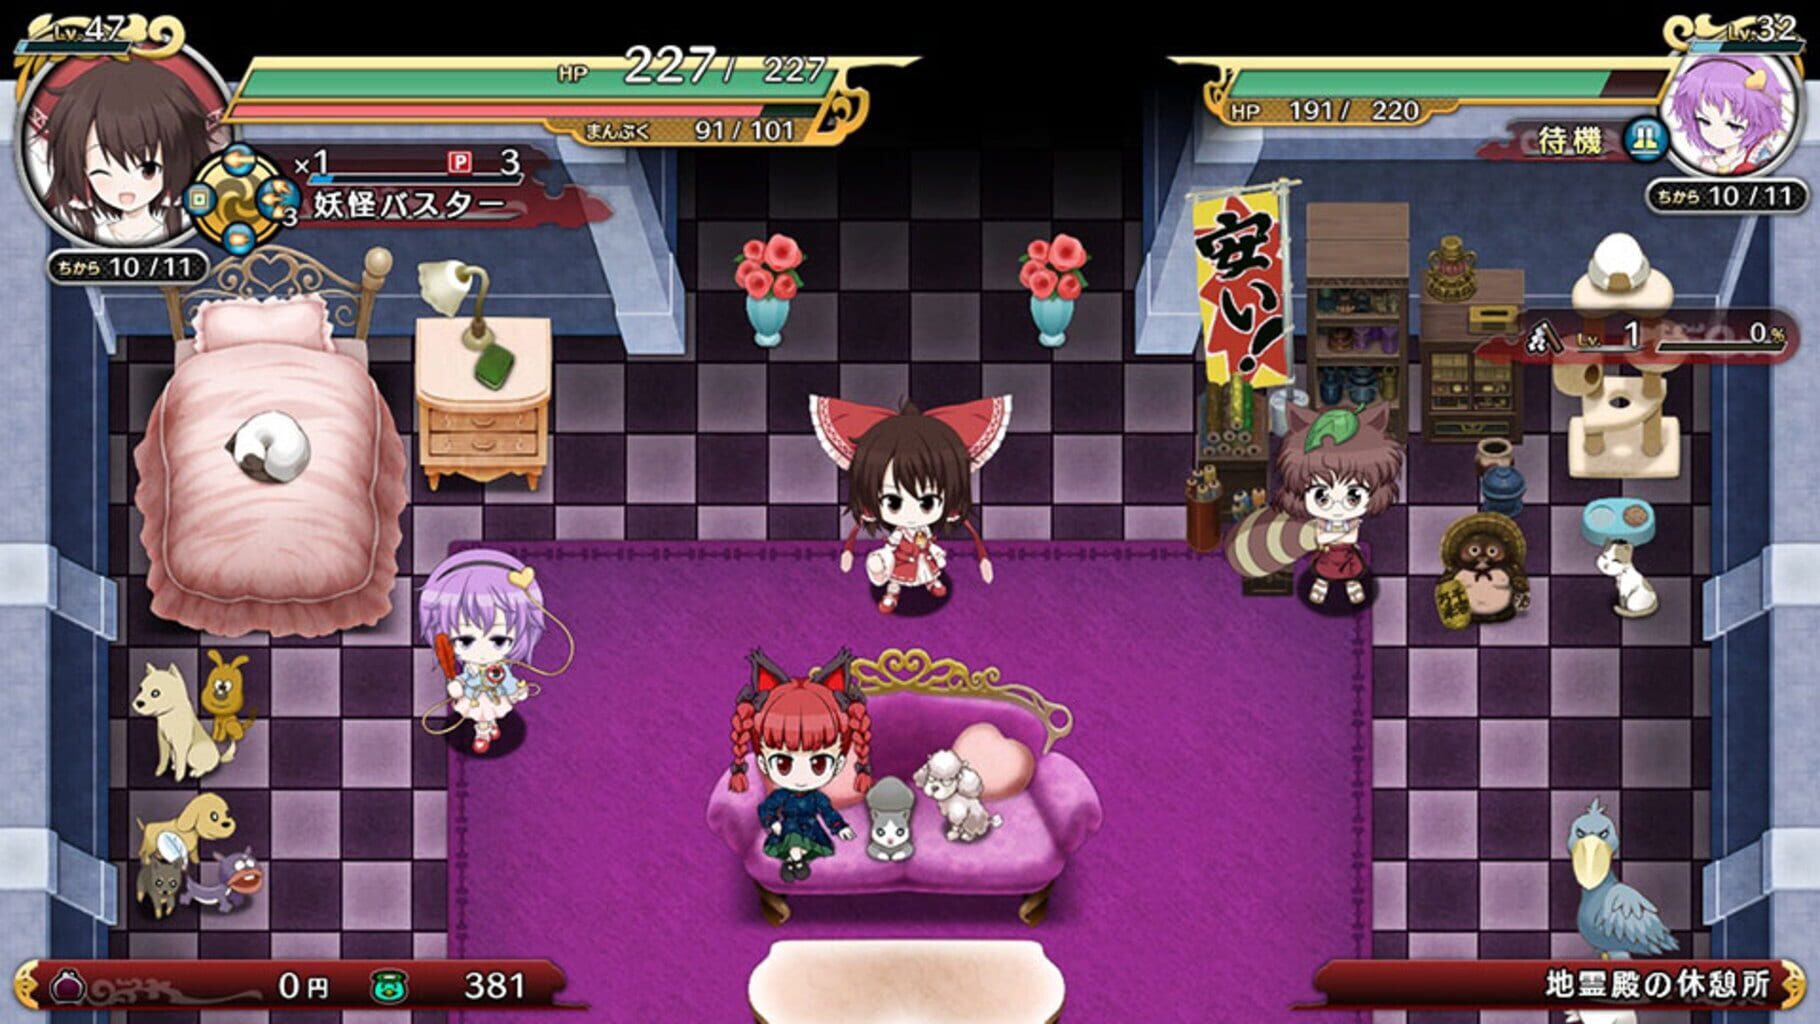 Screenshot for Touhou Genso Wanderer